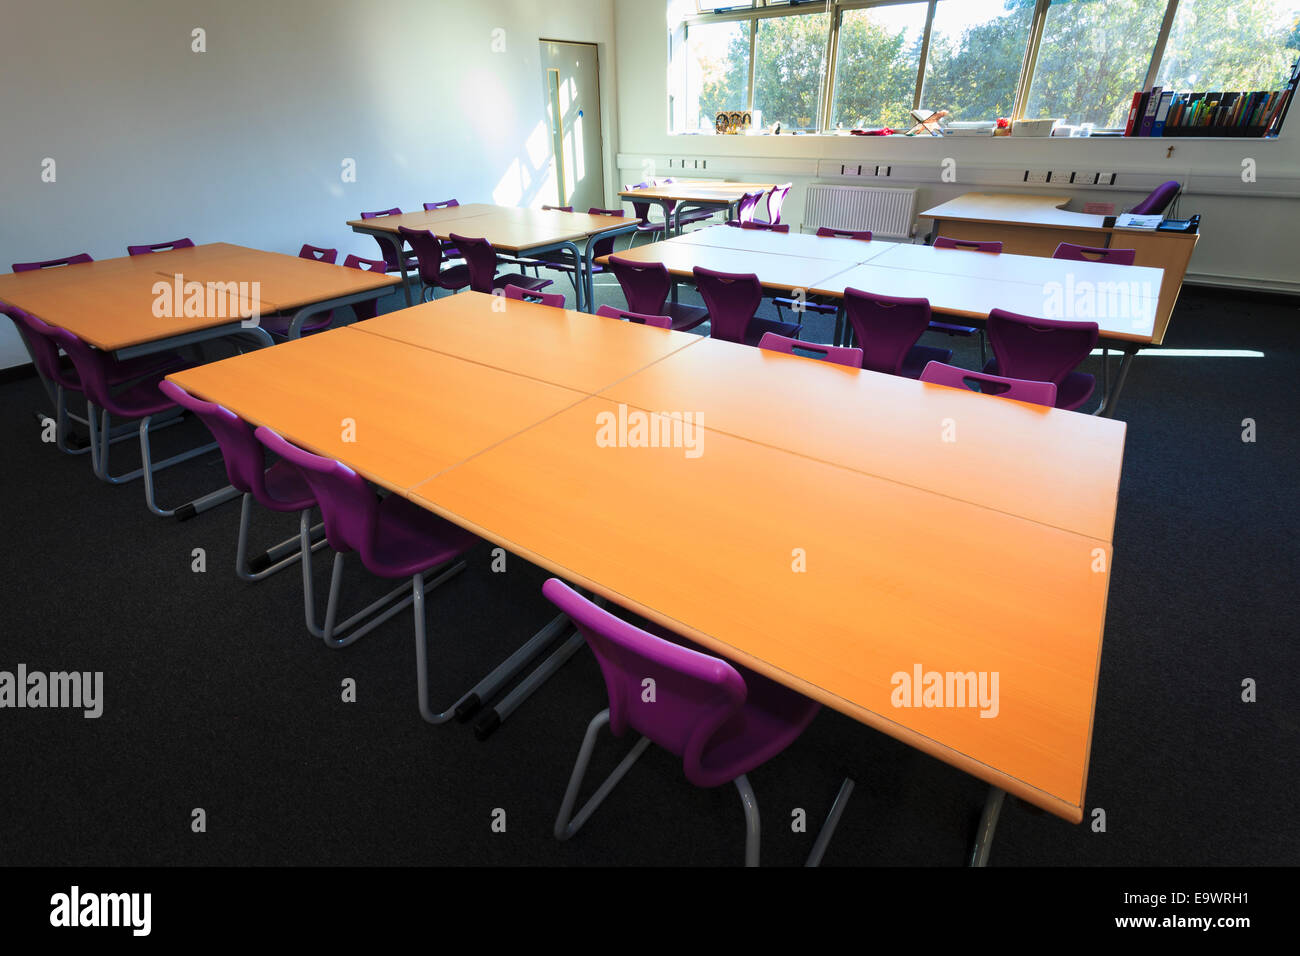 Desks in unoccupied school classroom Stock Photo